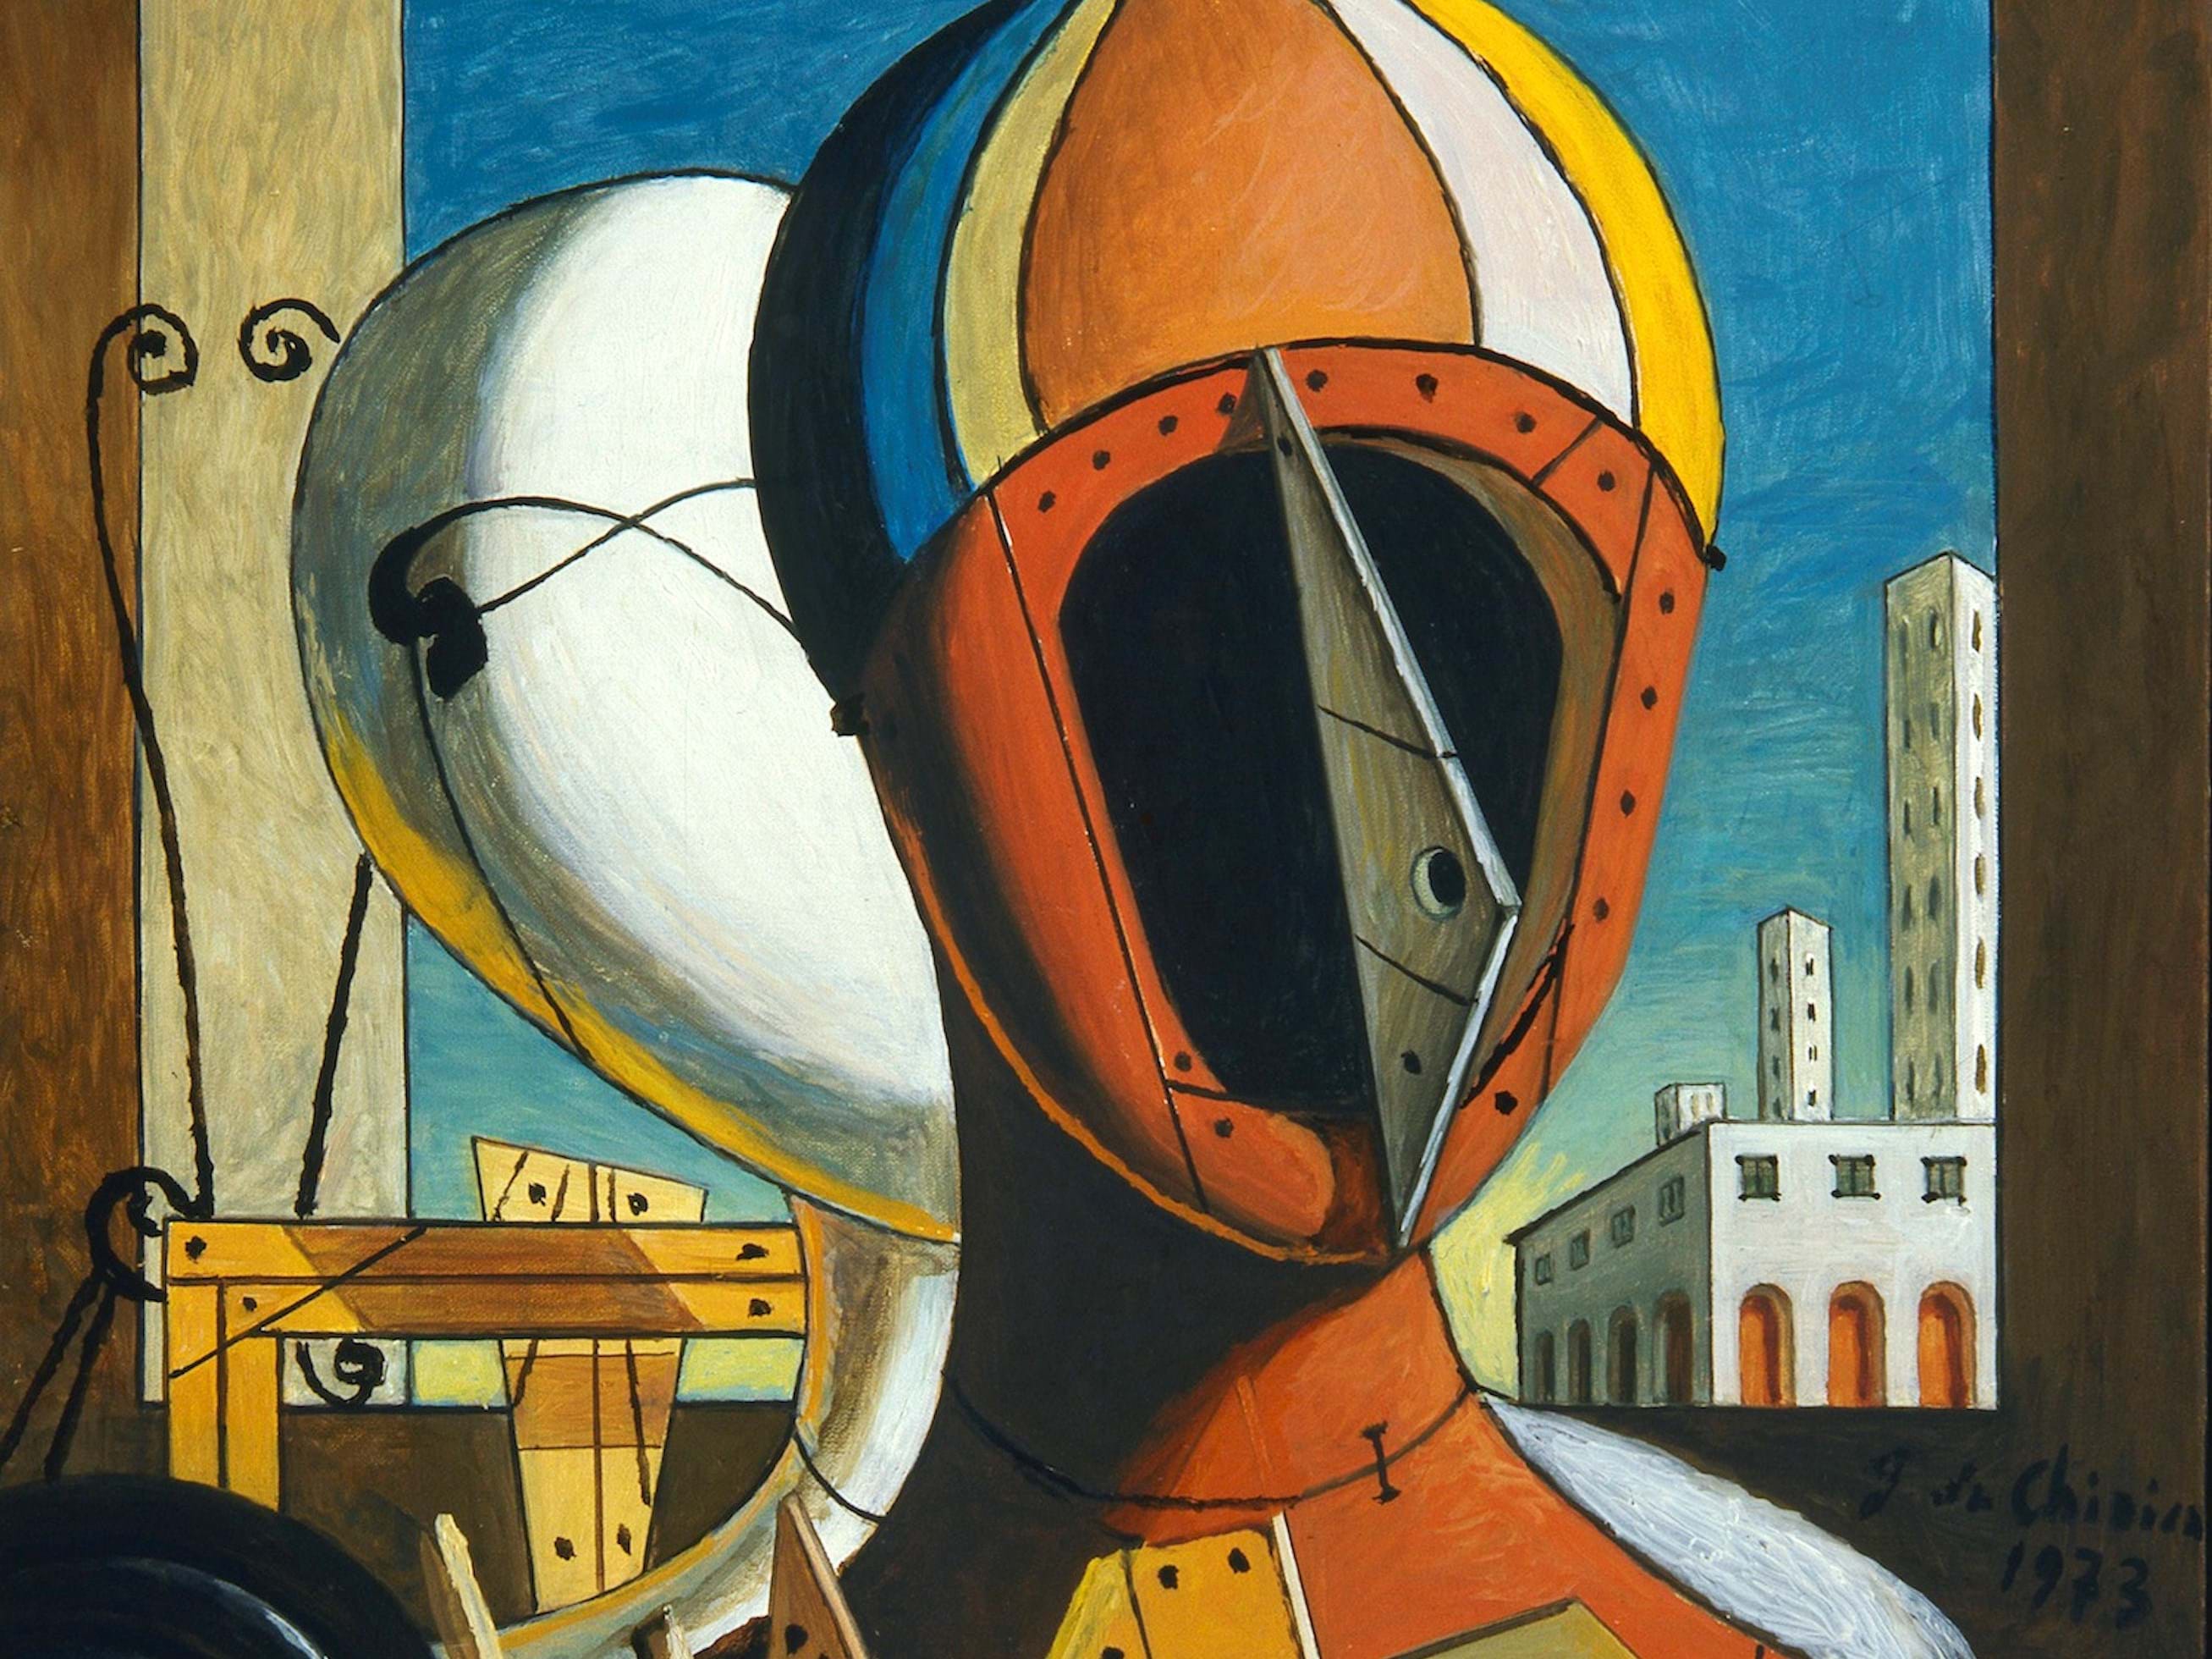 giorgio-de-chirico-le-maschere-1959-oil-on-canvas-cm-50-5x40.jpg